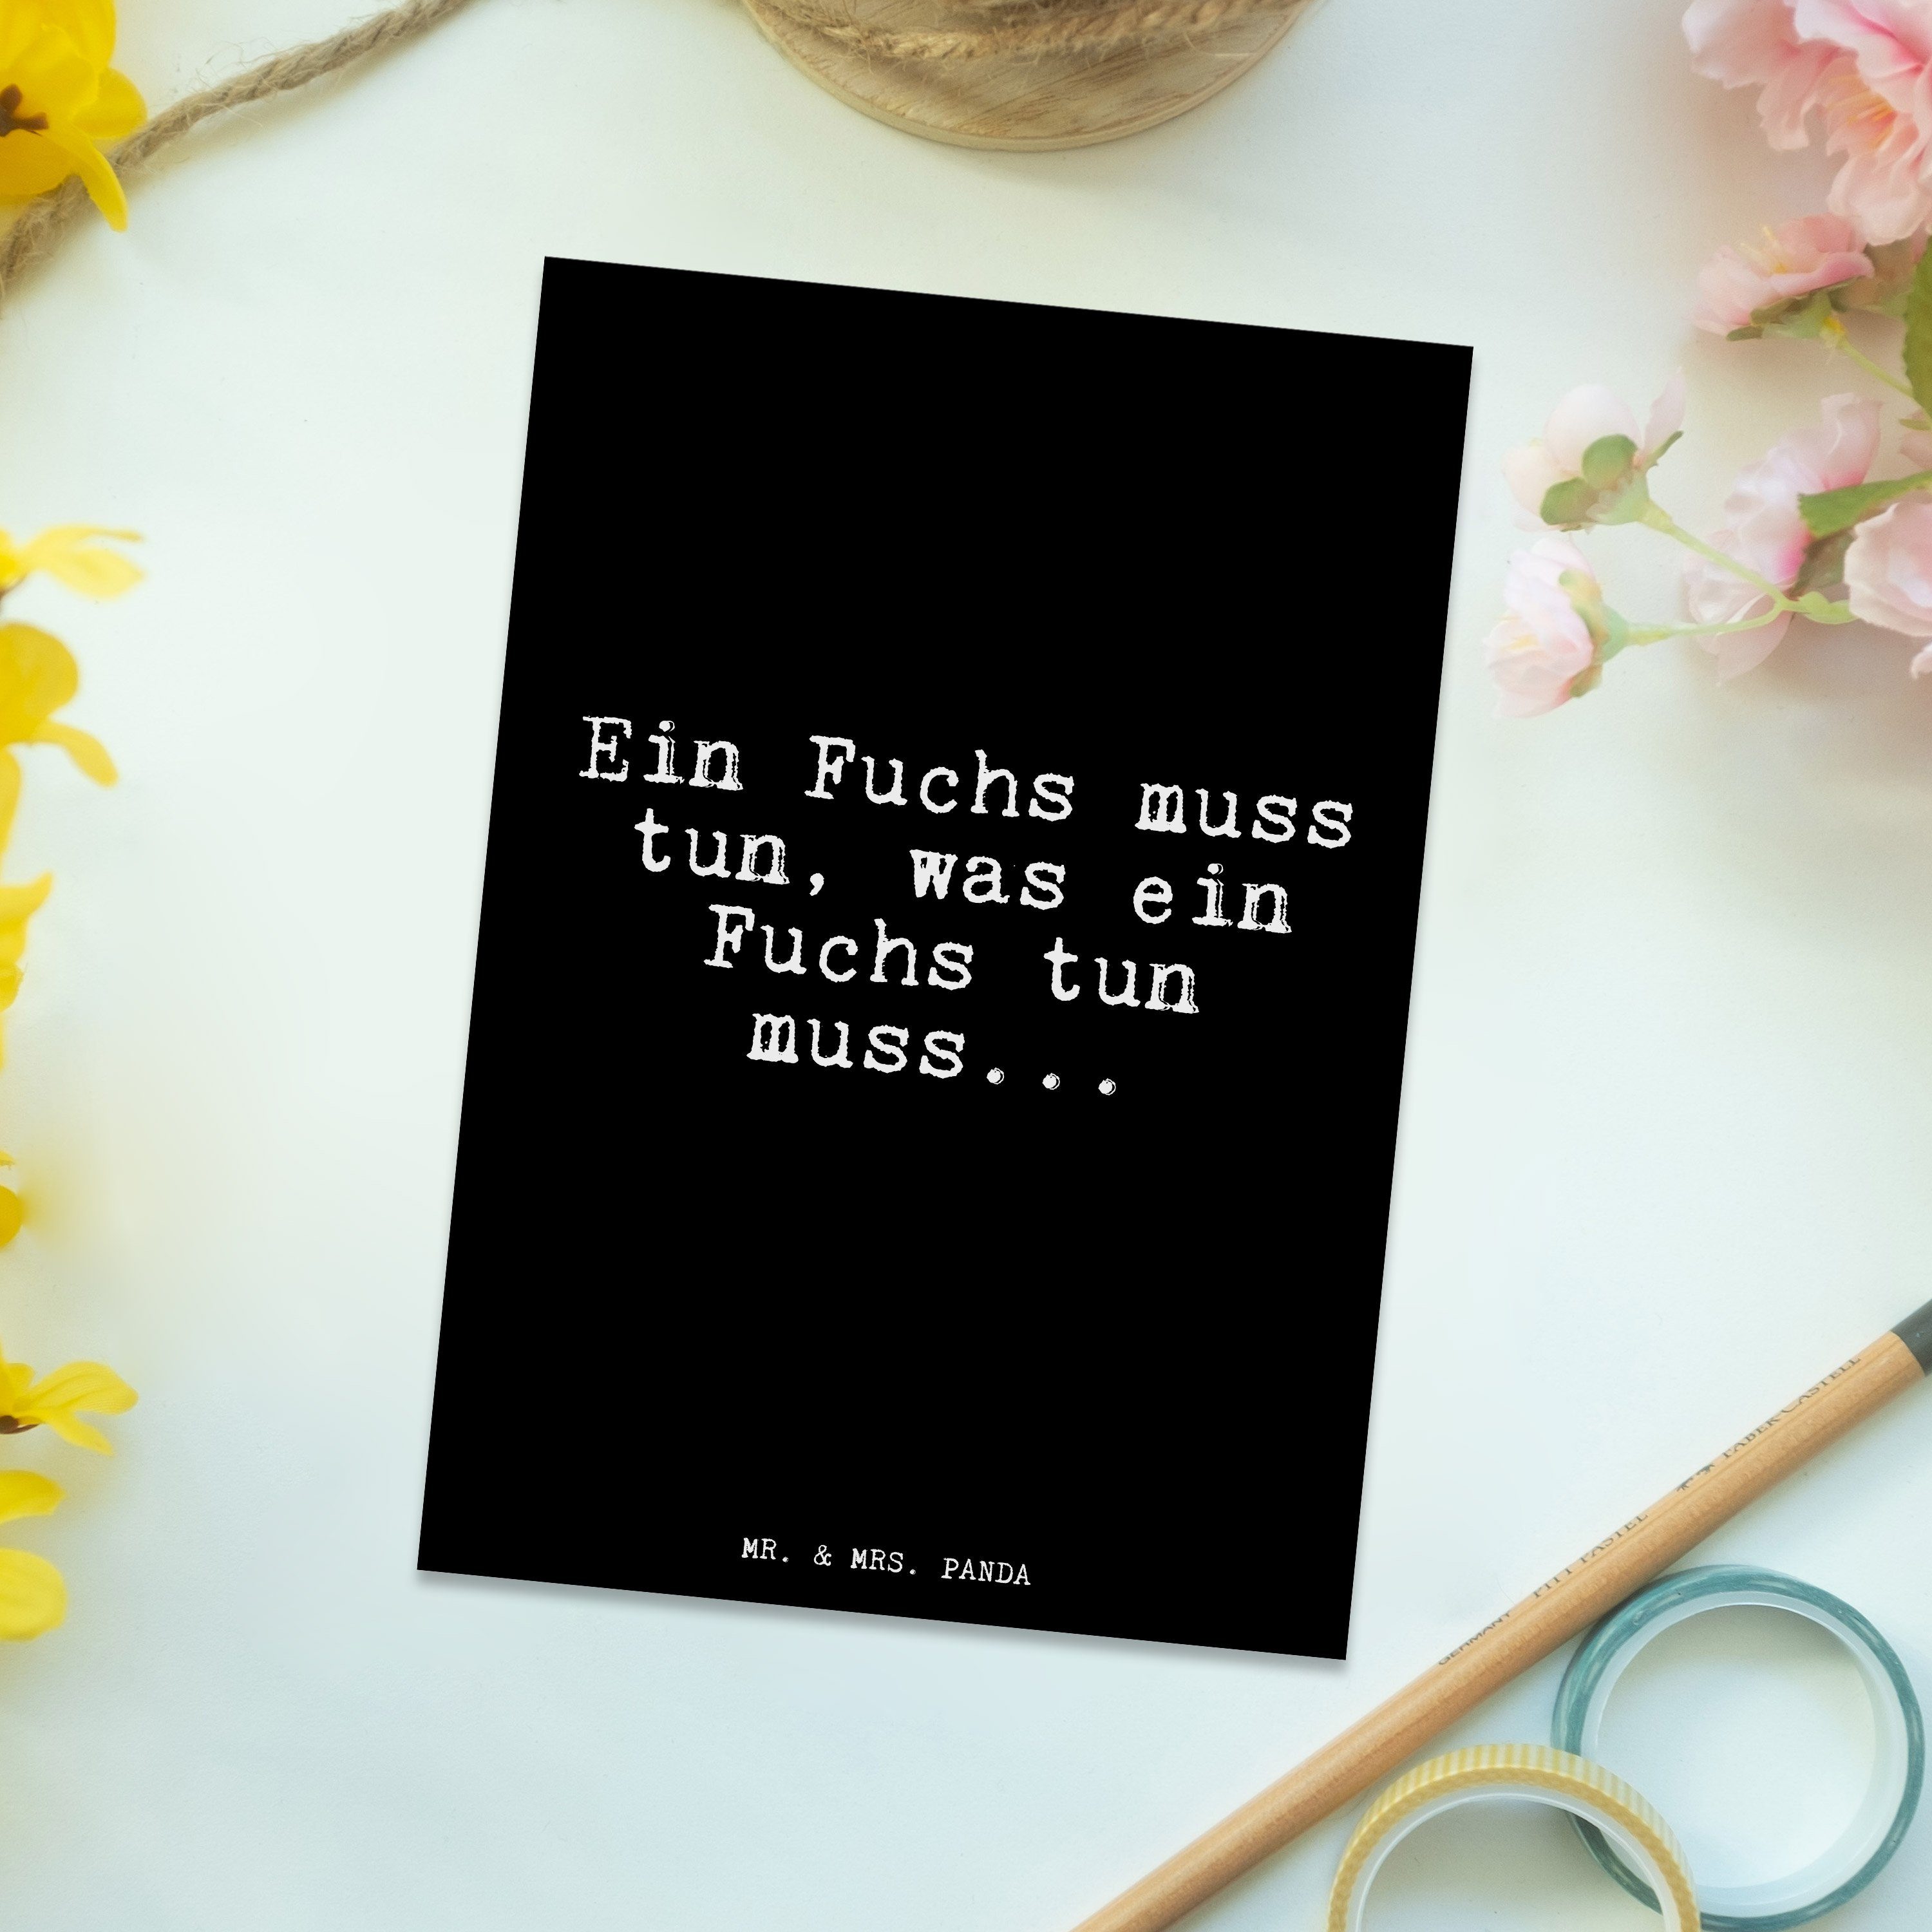 Schwarz Spruch, Geschenk, An Postkarte Panda Schlauberger, Ein & tun,... - Fuchs Mr. Mrs. - muss